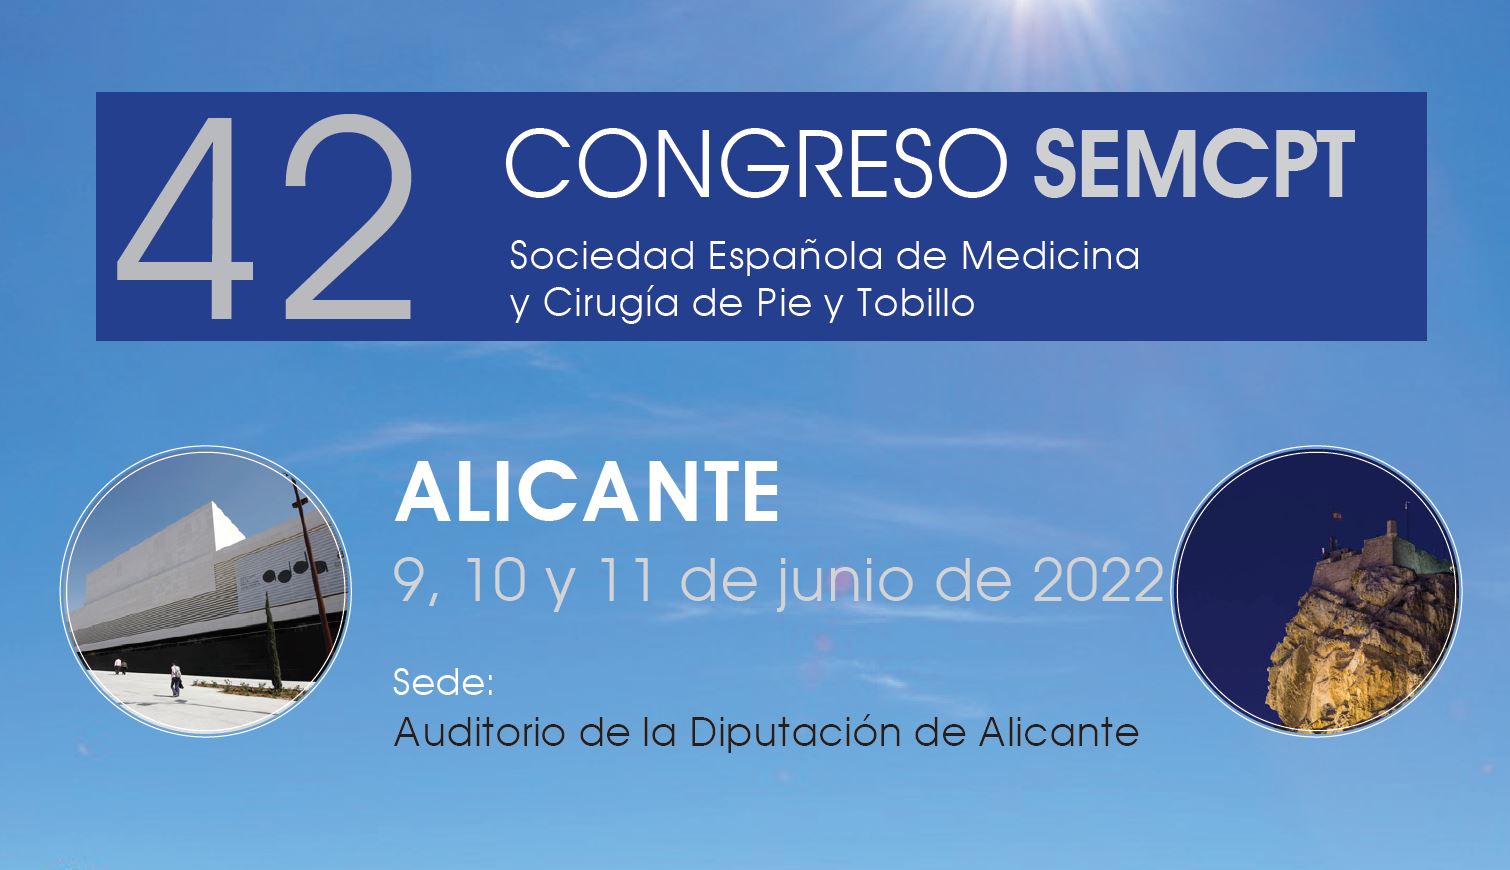 42 Congreso Nacional Sociedad Española de Medicina y Cirugía del Pie y Tobillo